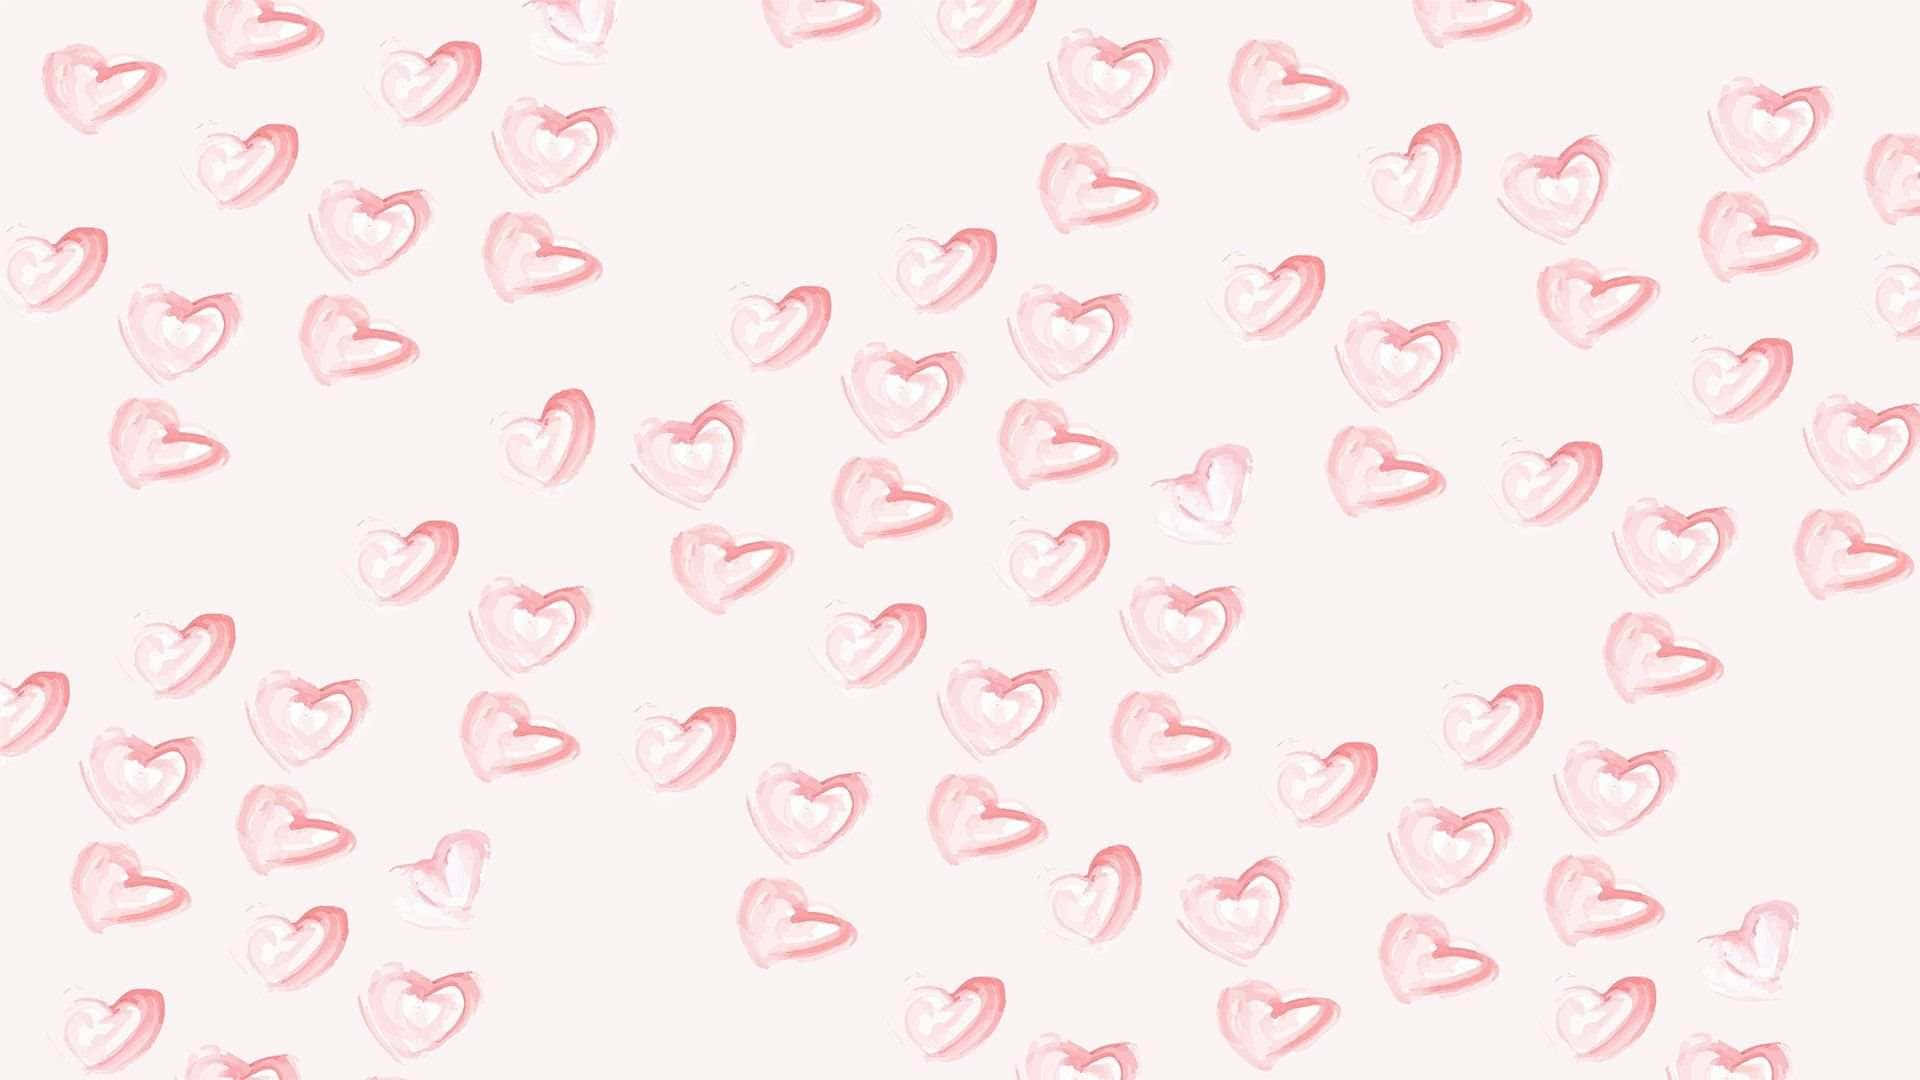 Lovecore Hearts Pattern Wallpaper